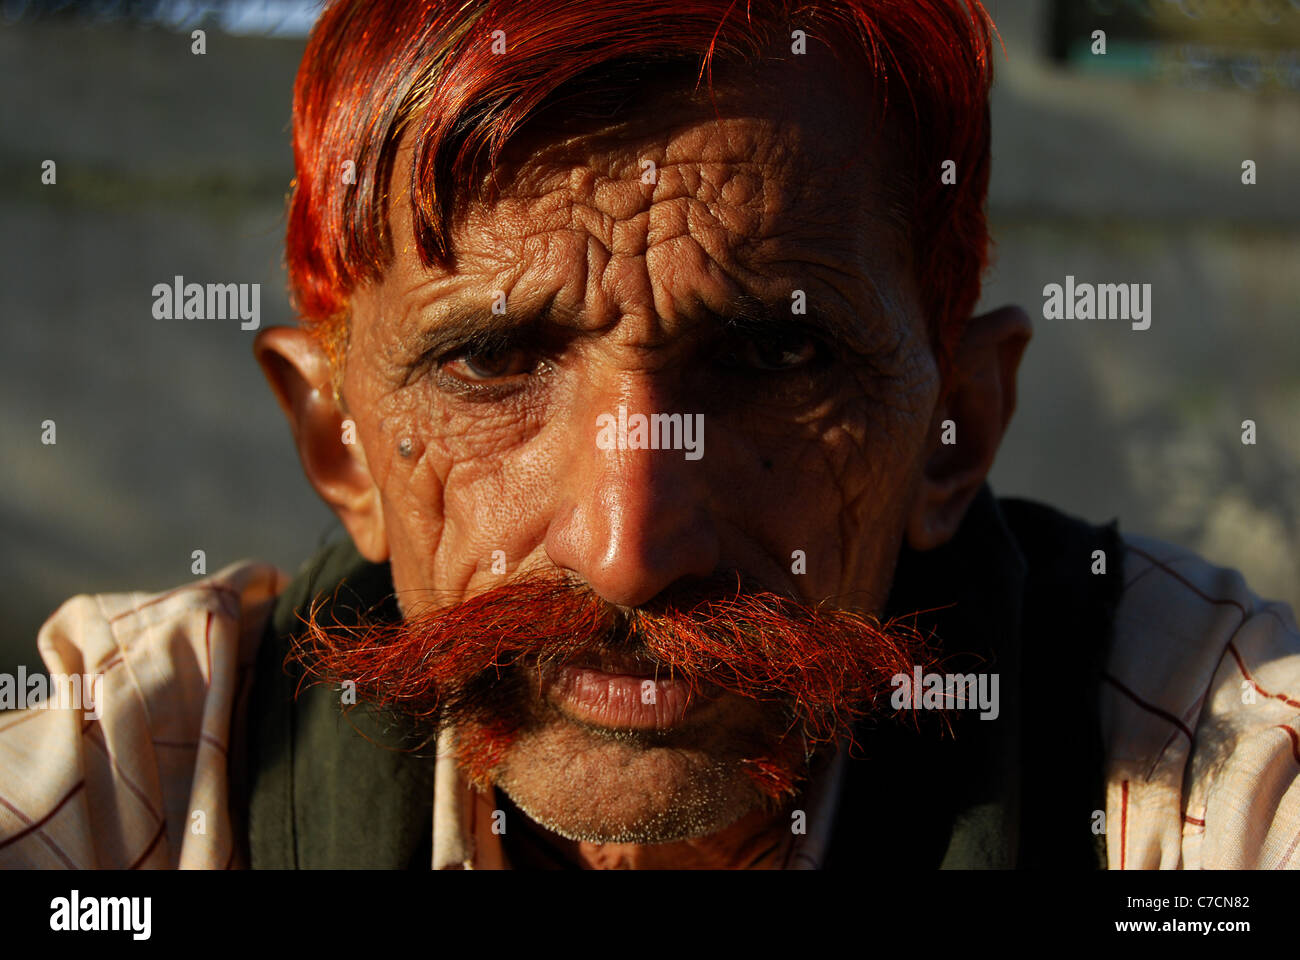 Un homme dont les cheveux et la moustache sont teints au henné ('mehndi' en hindi) (Inde) Banque D'Images